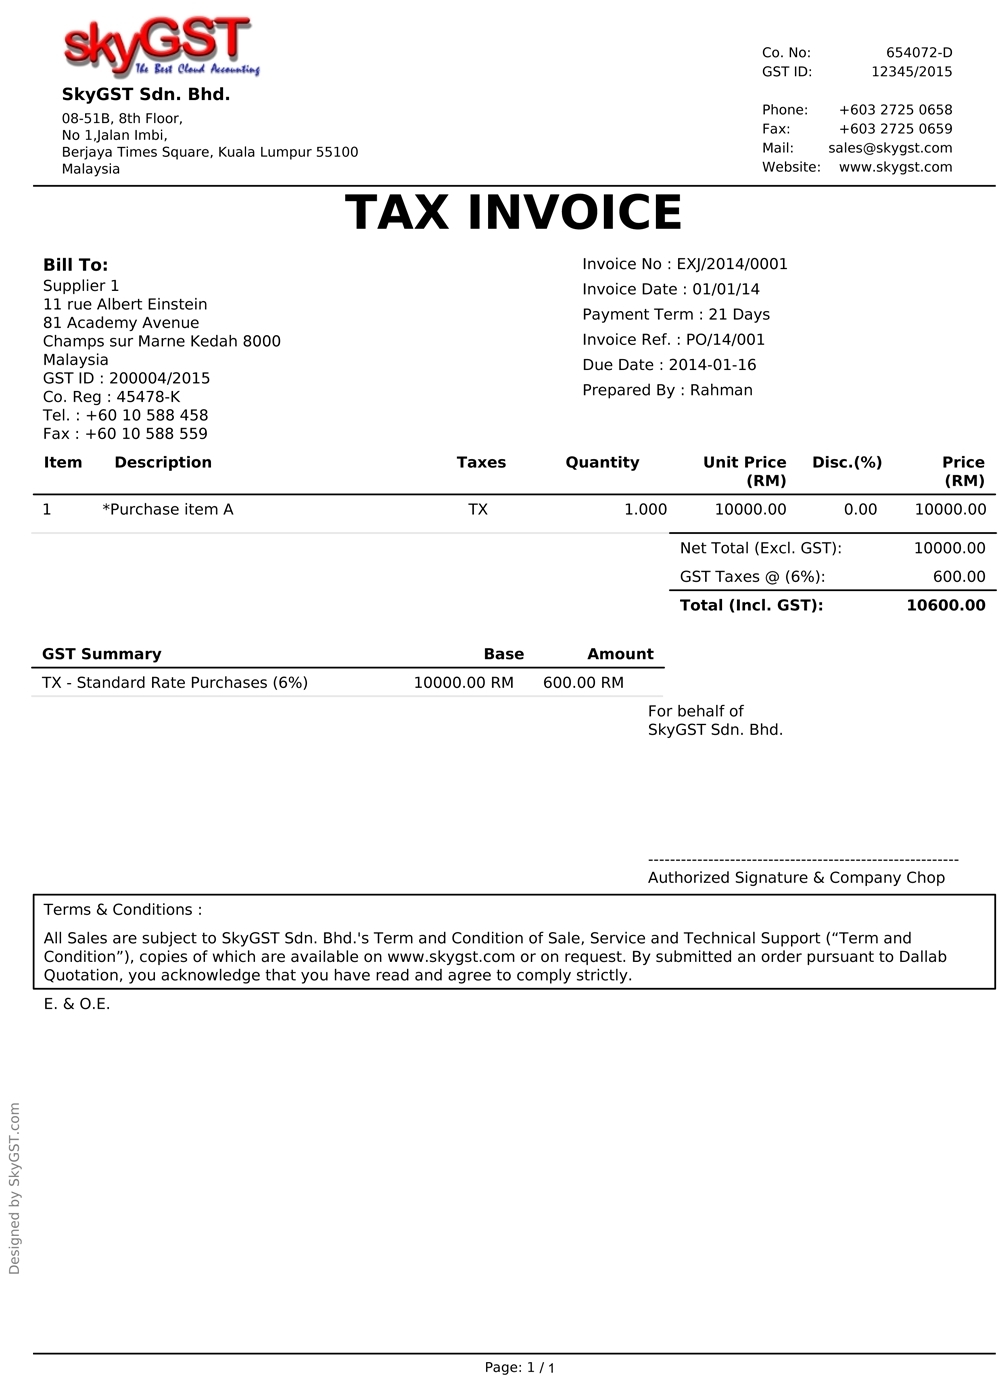 gst tax invoice template free design invoice template gst tax invoice